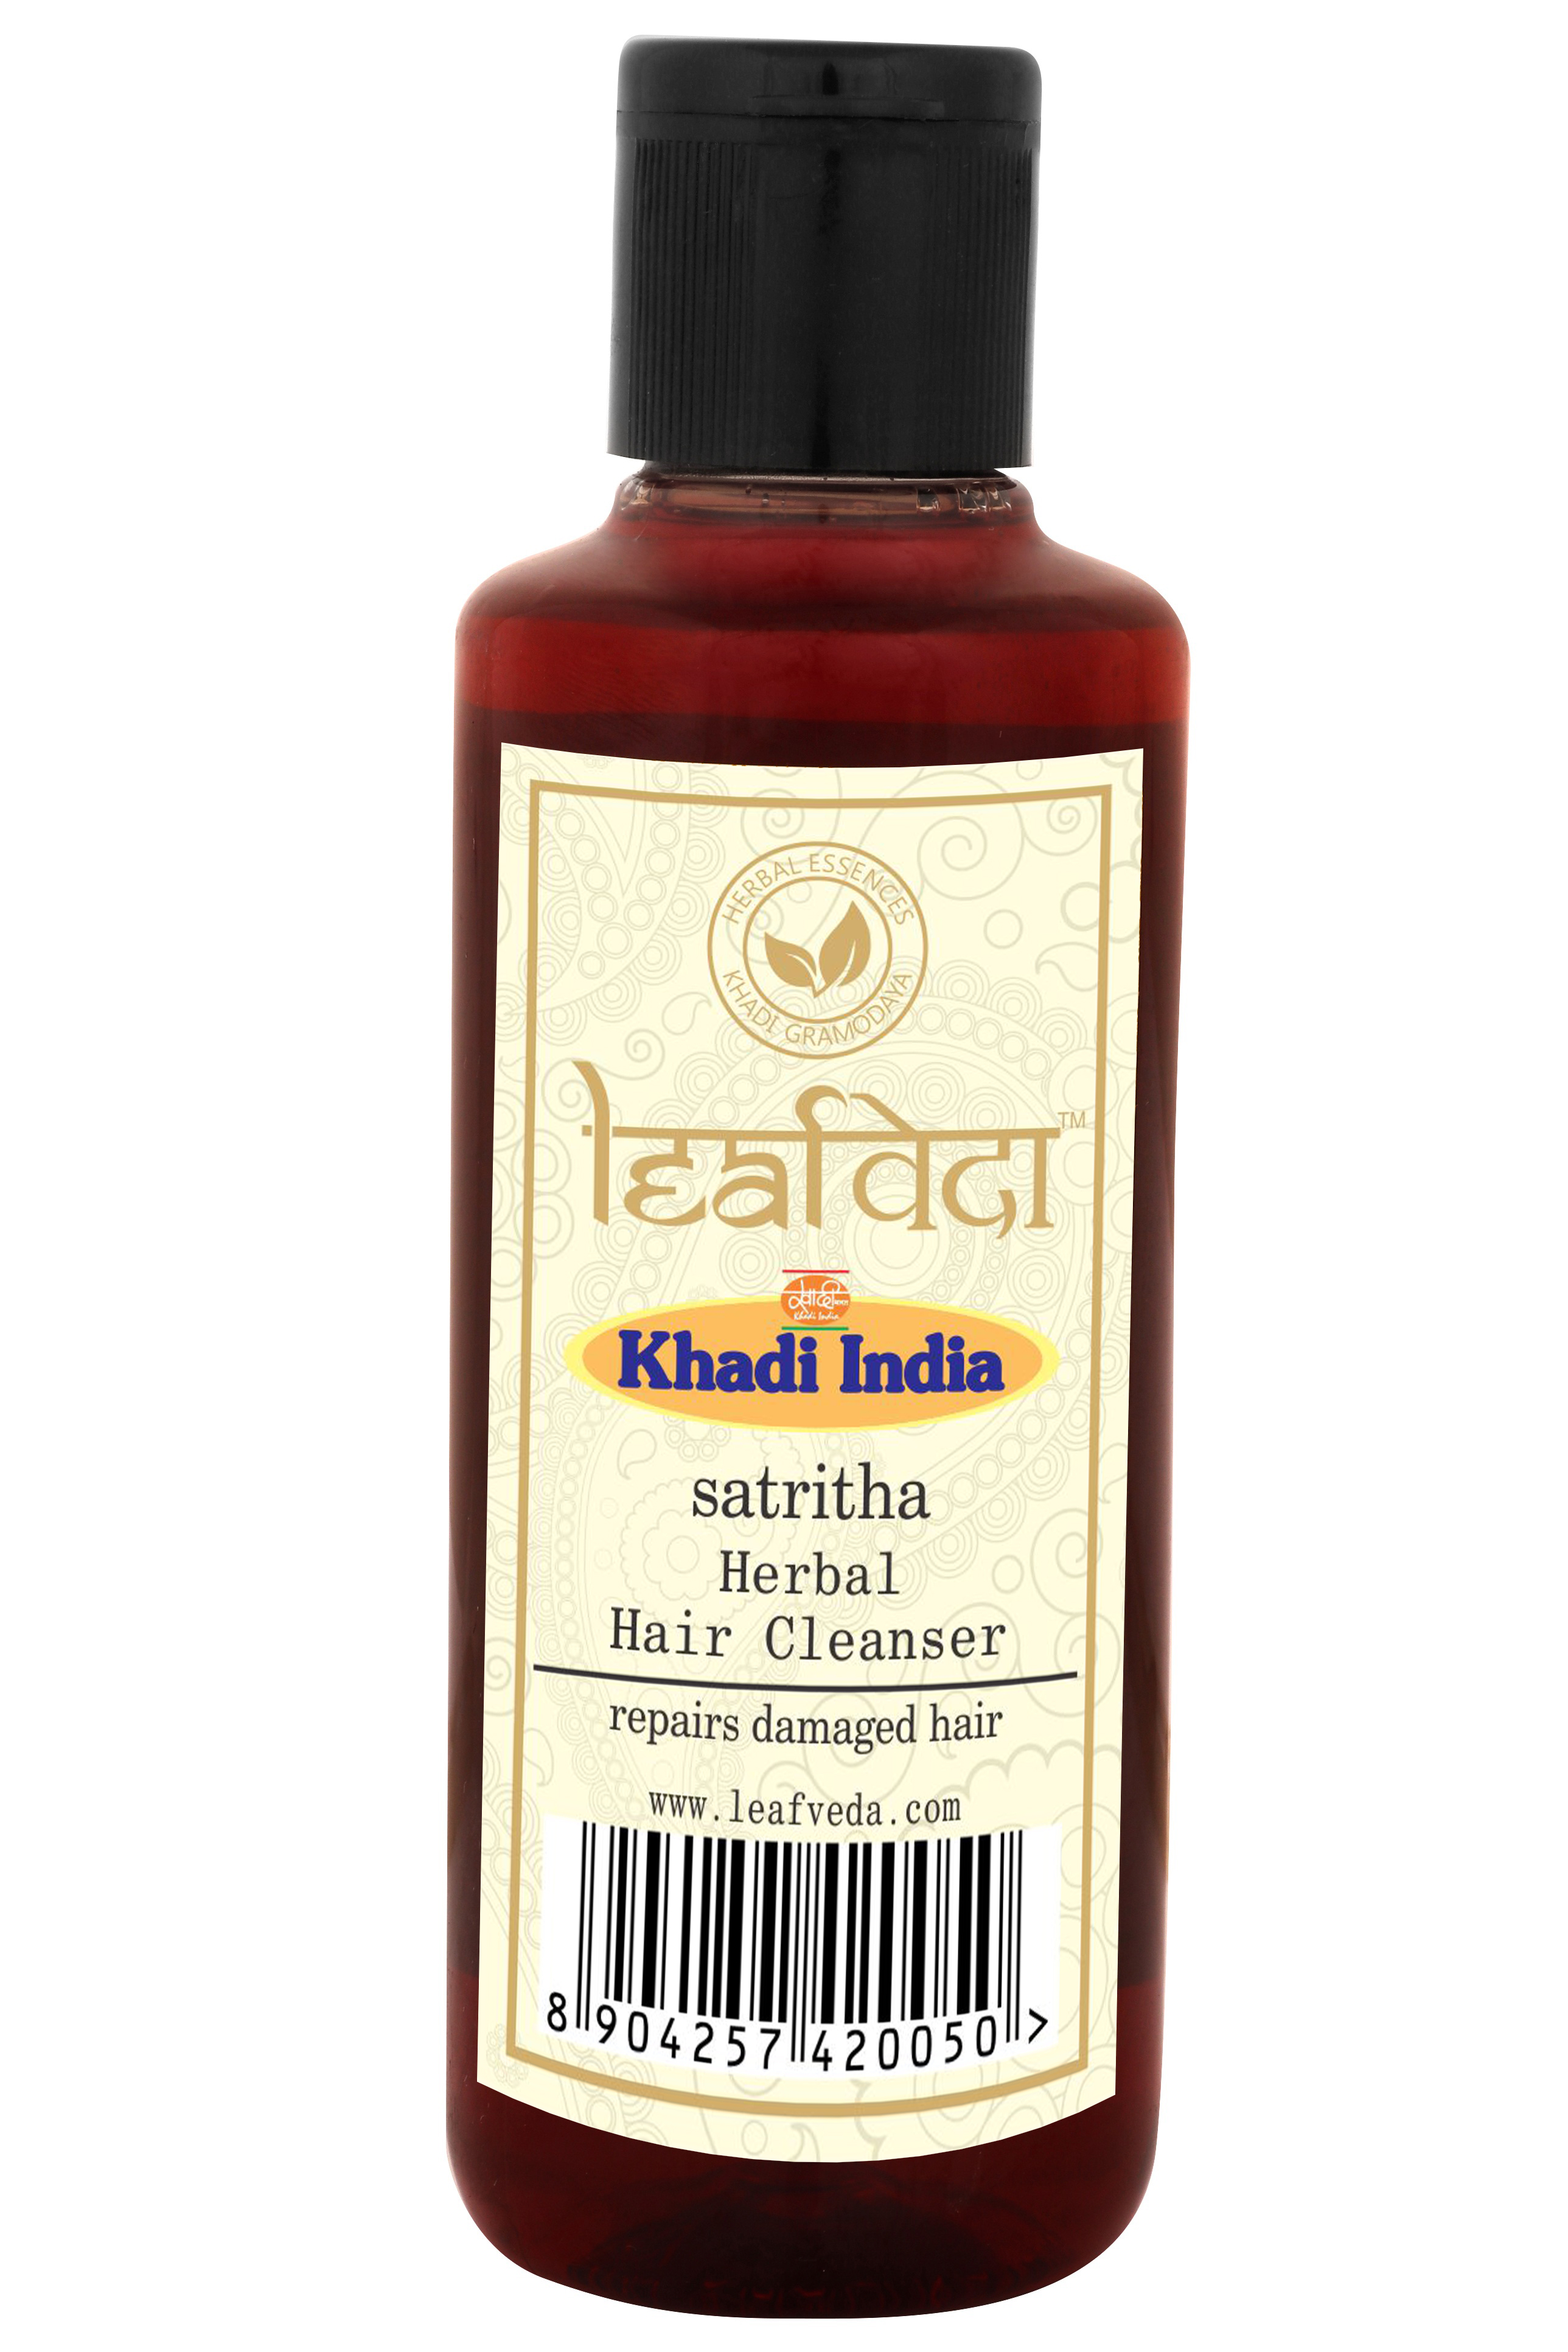 Buy Khadi Leafveda Satritha Herbal Hair Cleanser at Best Price Online